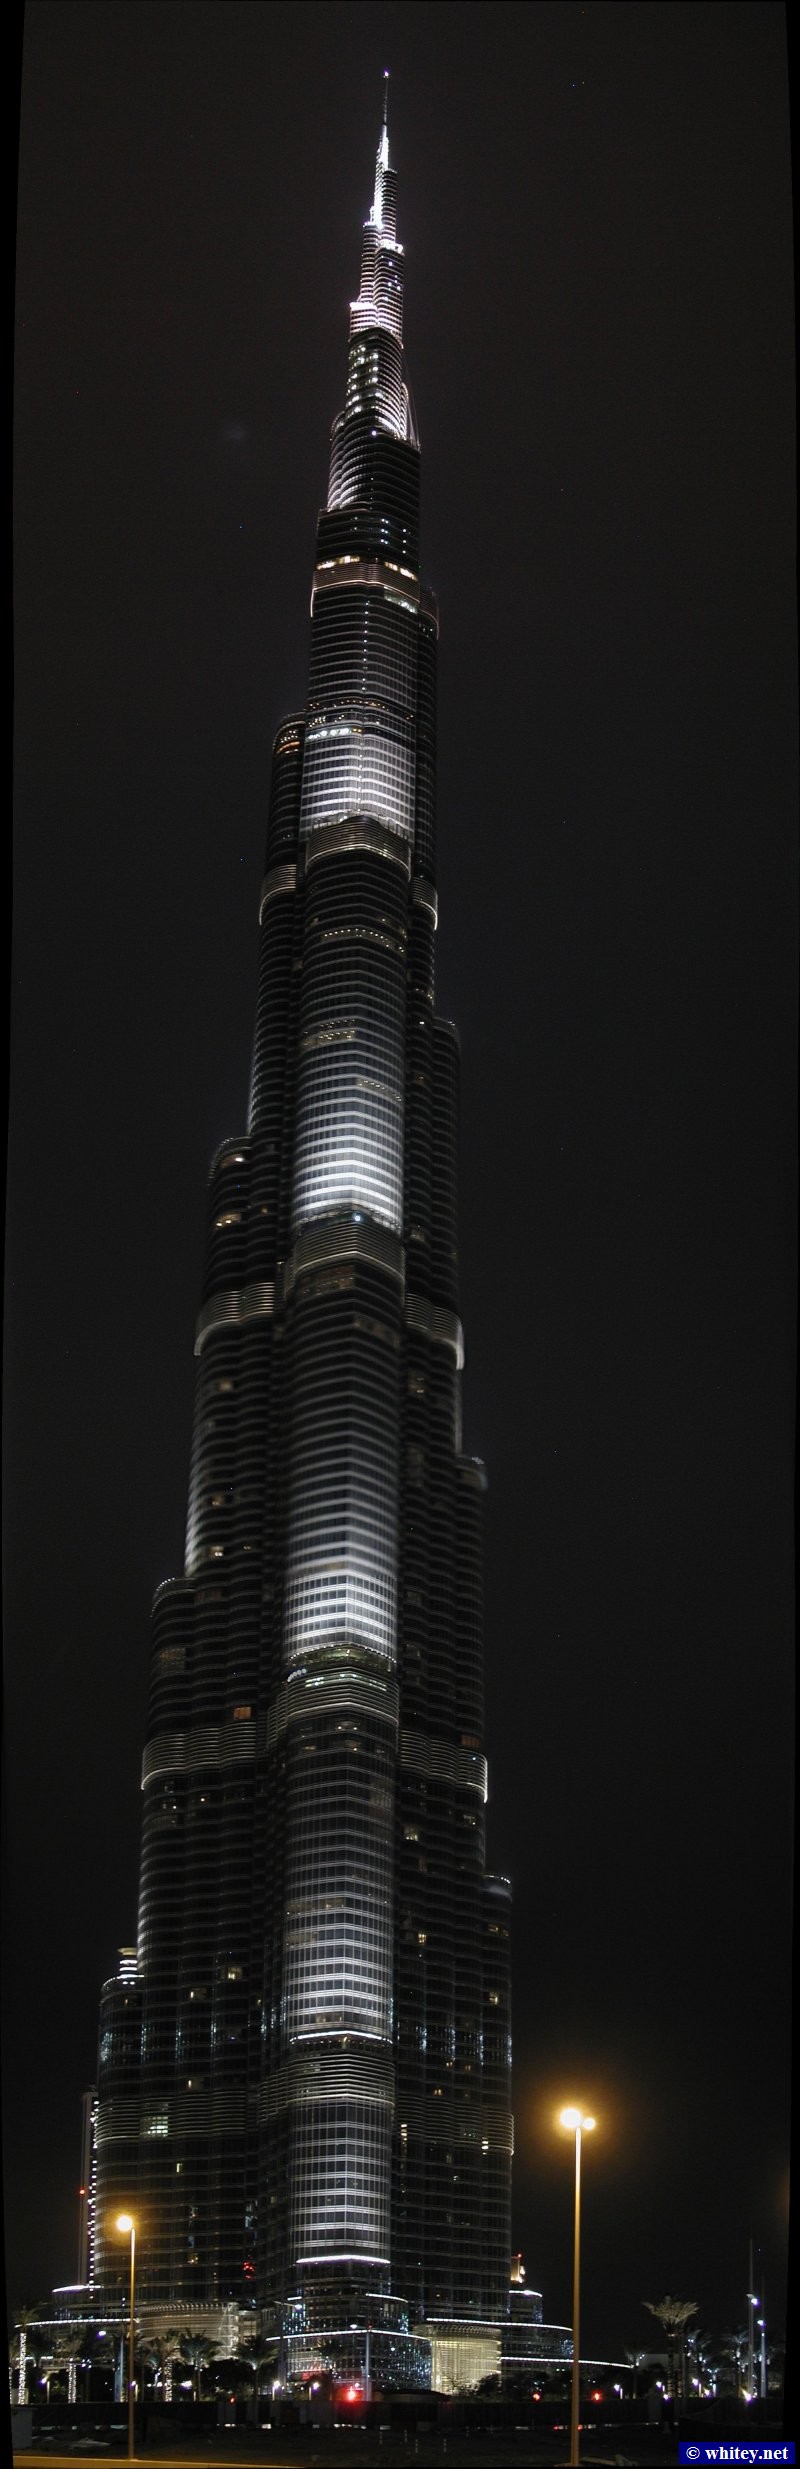 برج خليفة, 829m high, دبي, الإمارات العربية المتحدة.